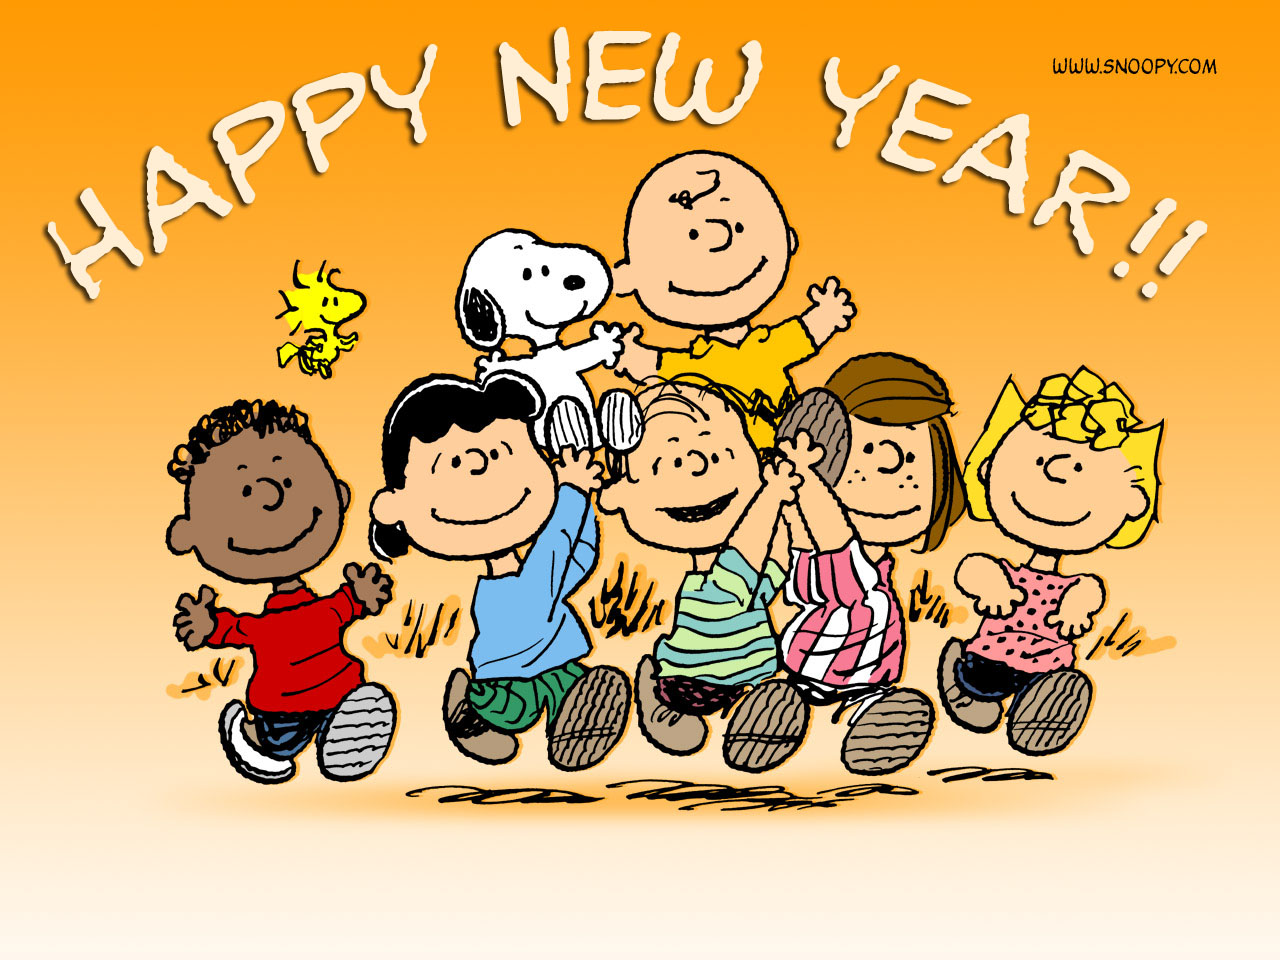 Peanuts Happy New Year From Eringo